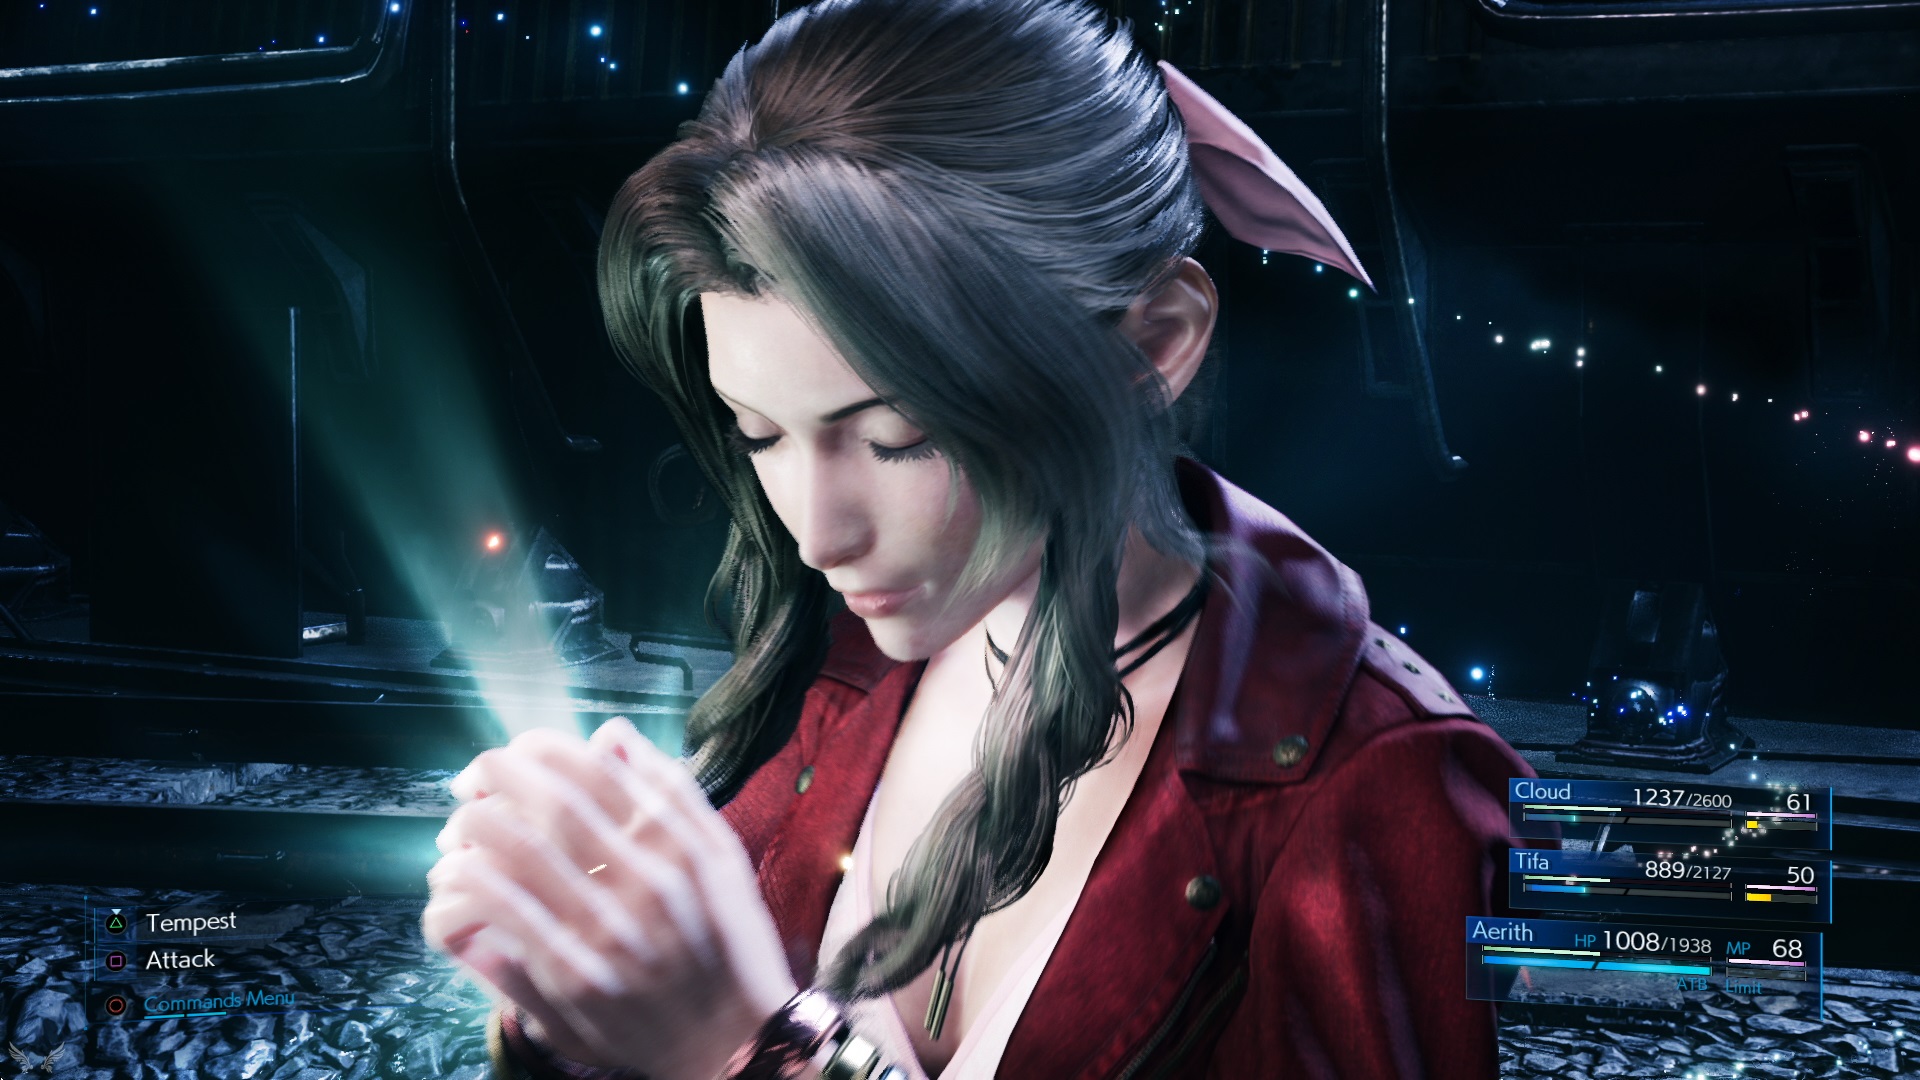 Le nostre prime impressioni SENZA SPOILER su Final Fantasy VII Remake